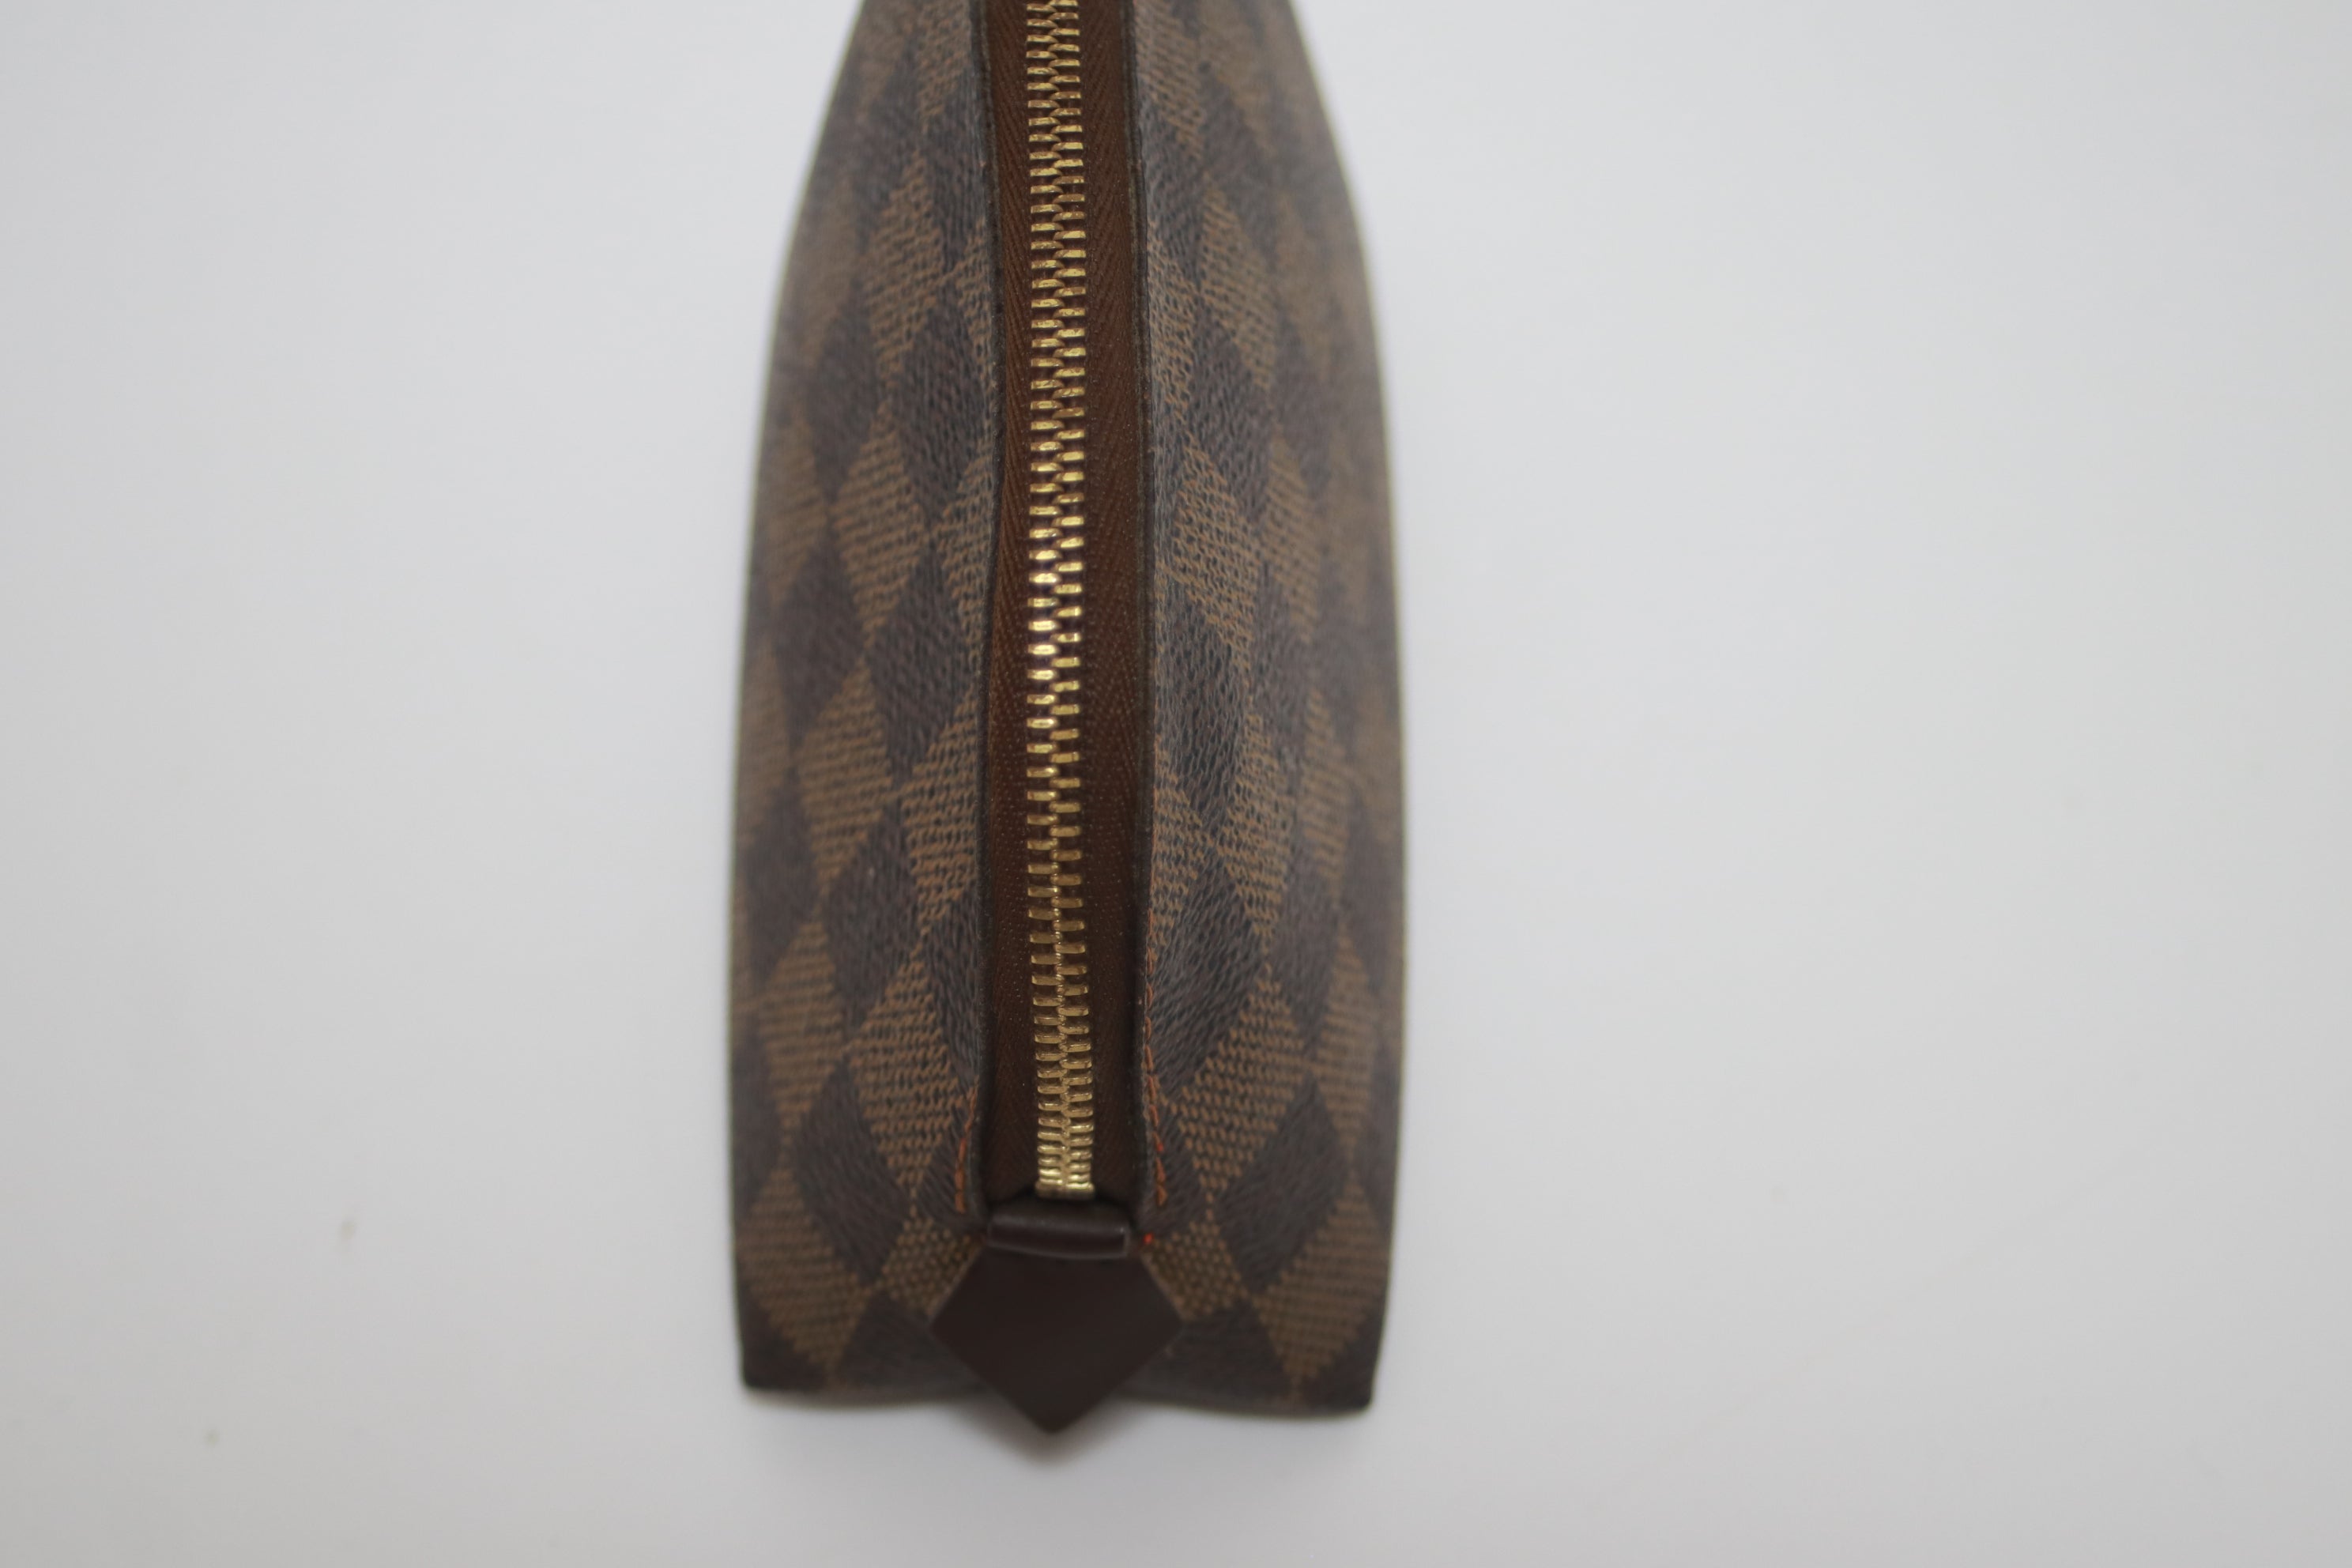 Louis Vuitton Deauville Handbag Used (6896)